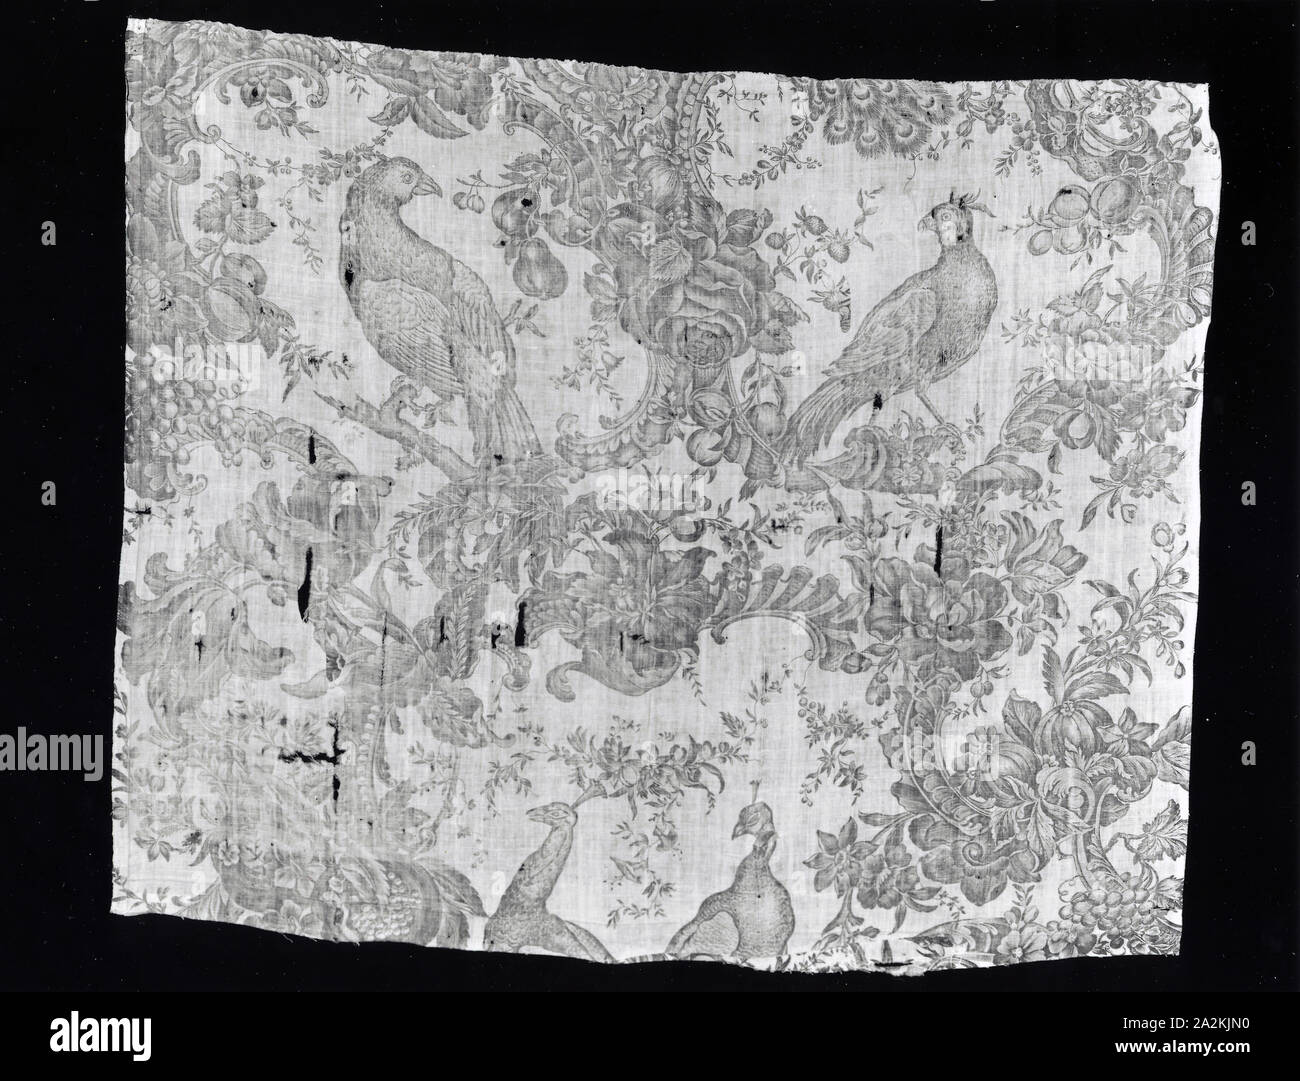 De Bord (ameublement), 1765/75, fabriqué par Bromley Hall (anglais, 1694-1823), en Angleterre, Middlesex, peuplier, Middlesex, du coton, à armure toile, imprimé sur cuivre, 84,2 x 100,7 cm (33 1/8 x 39 5/8 po Banque D'Images